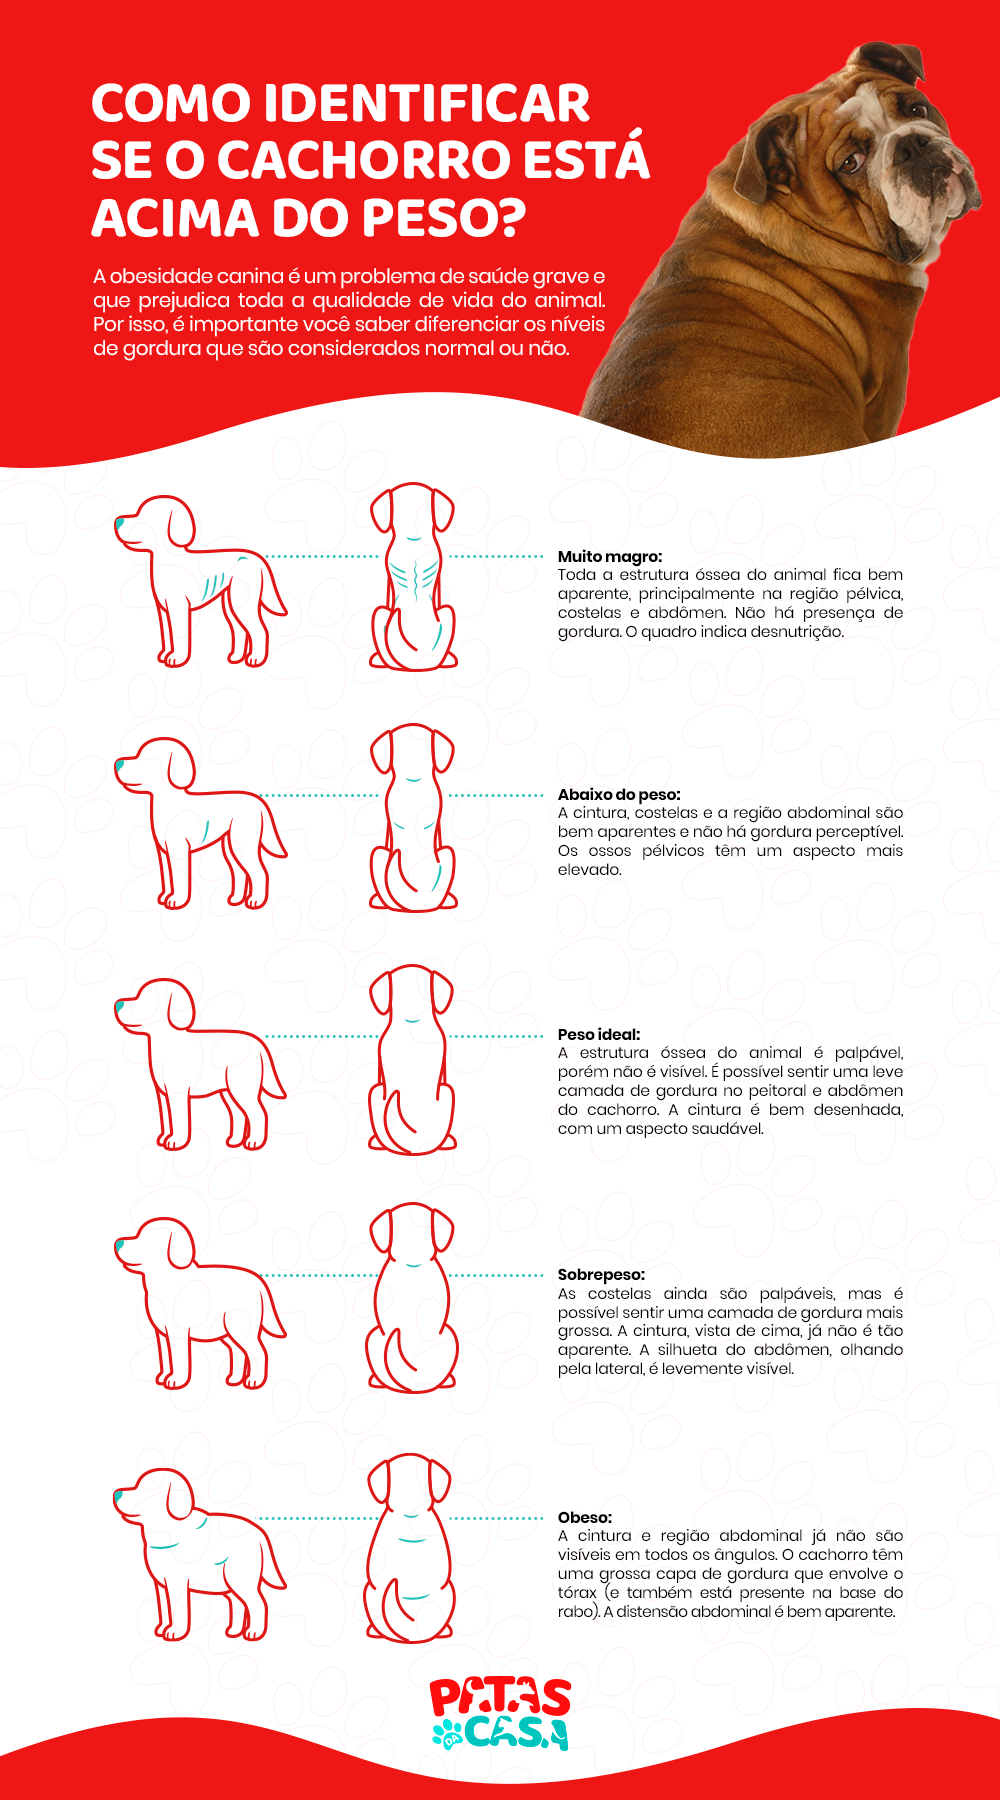  Vetsug van honde: infographic leer jou hoe om 'n vetsugtige hond van 'n gesonde dier te onderskei